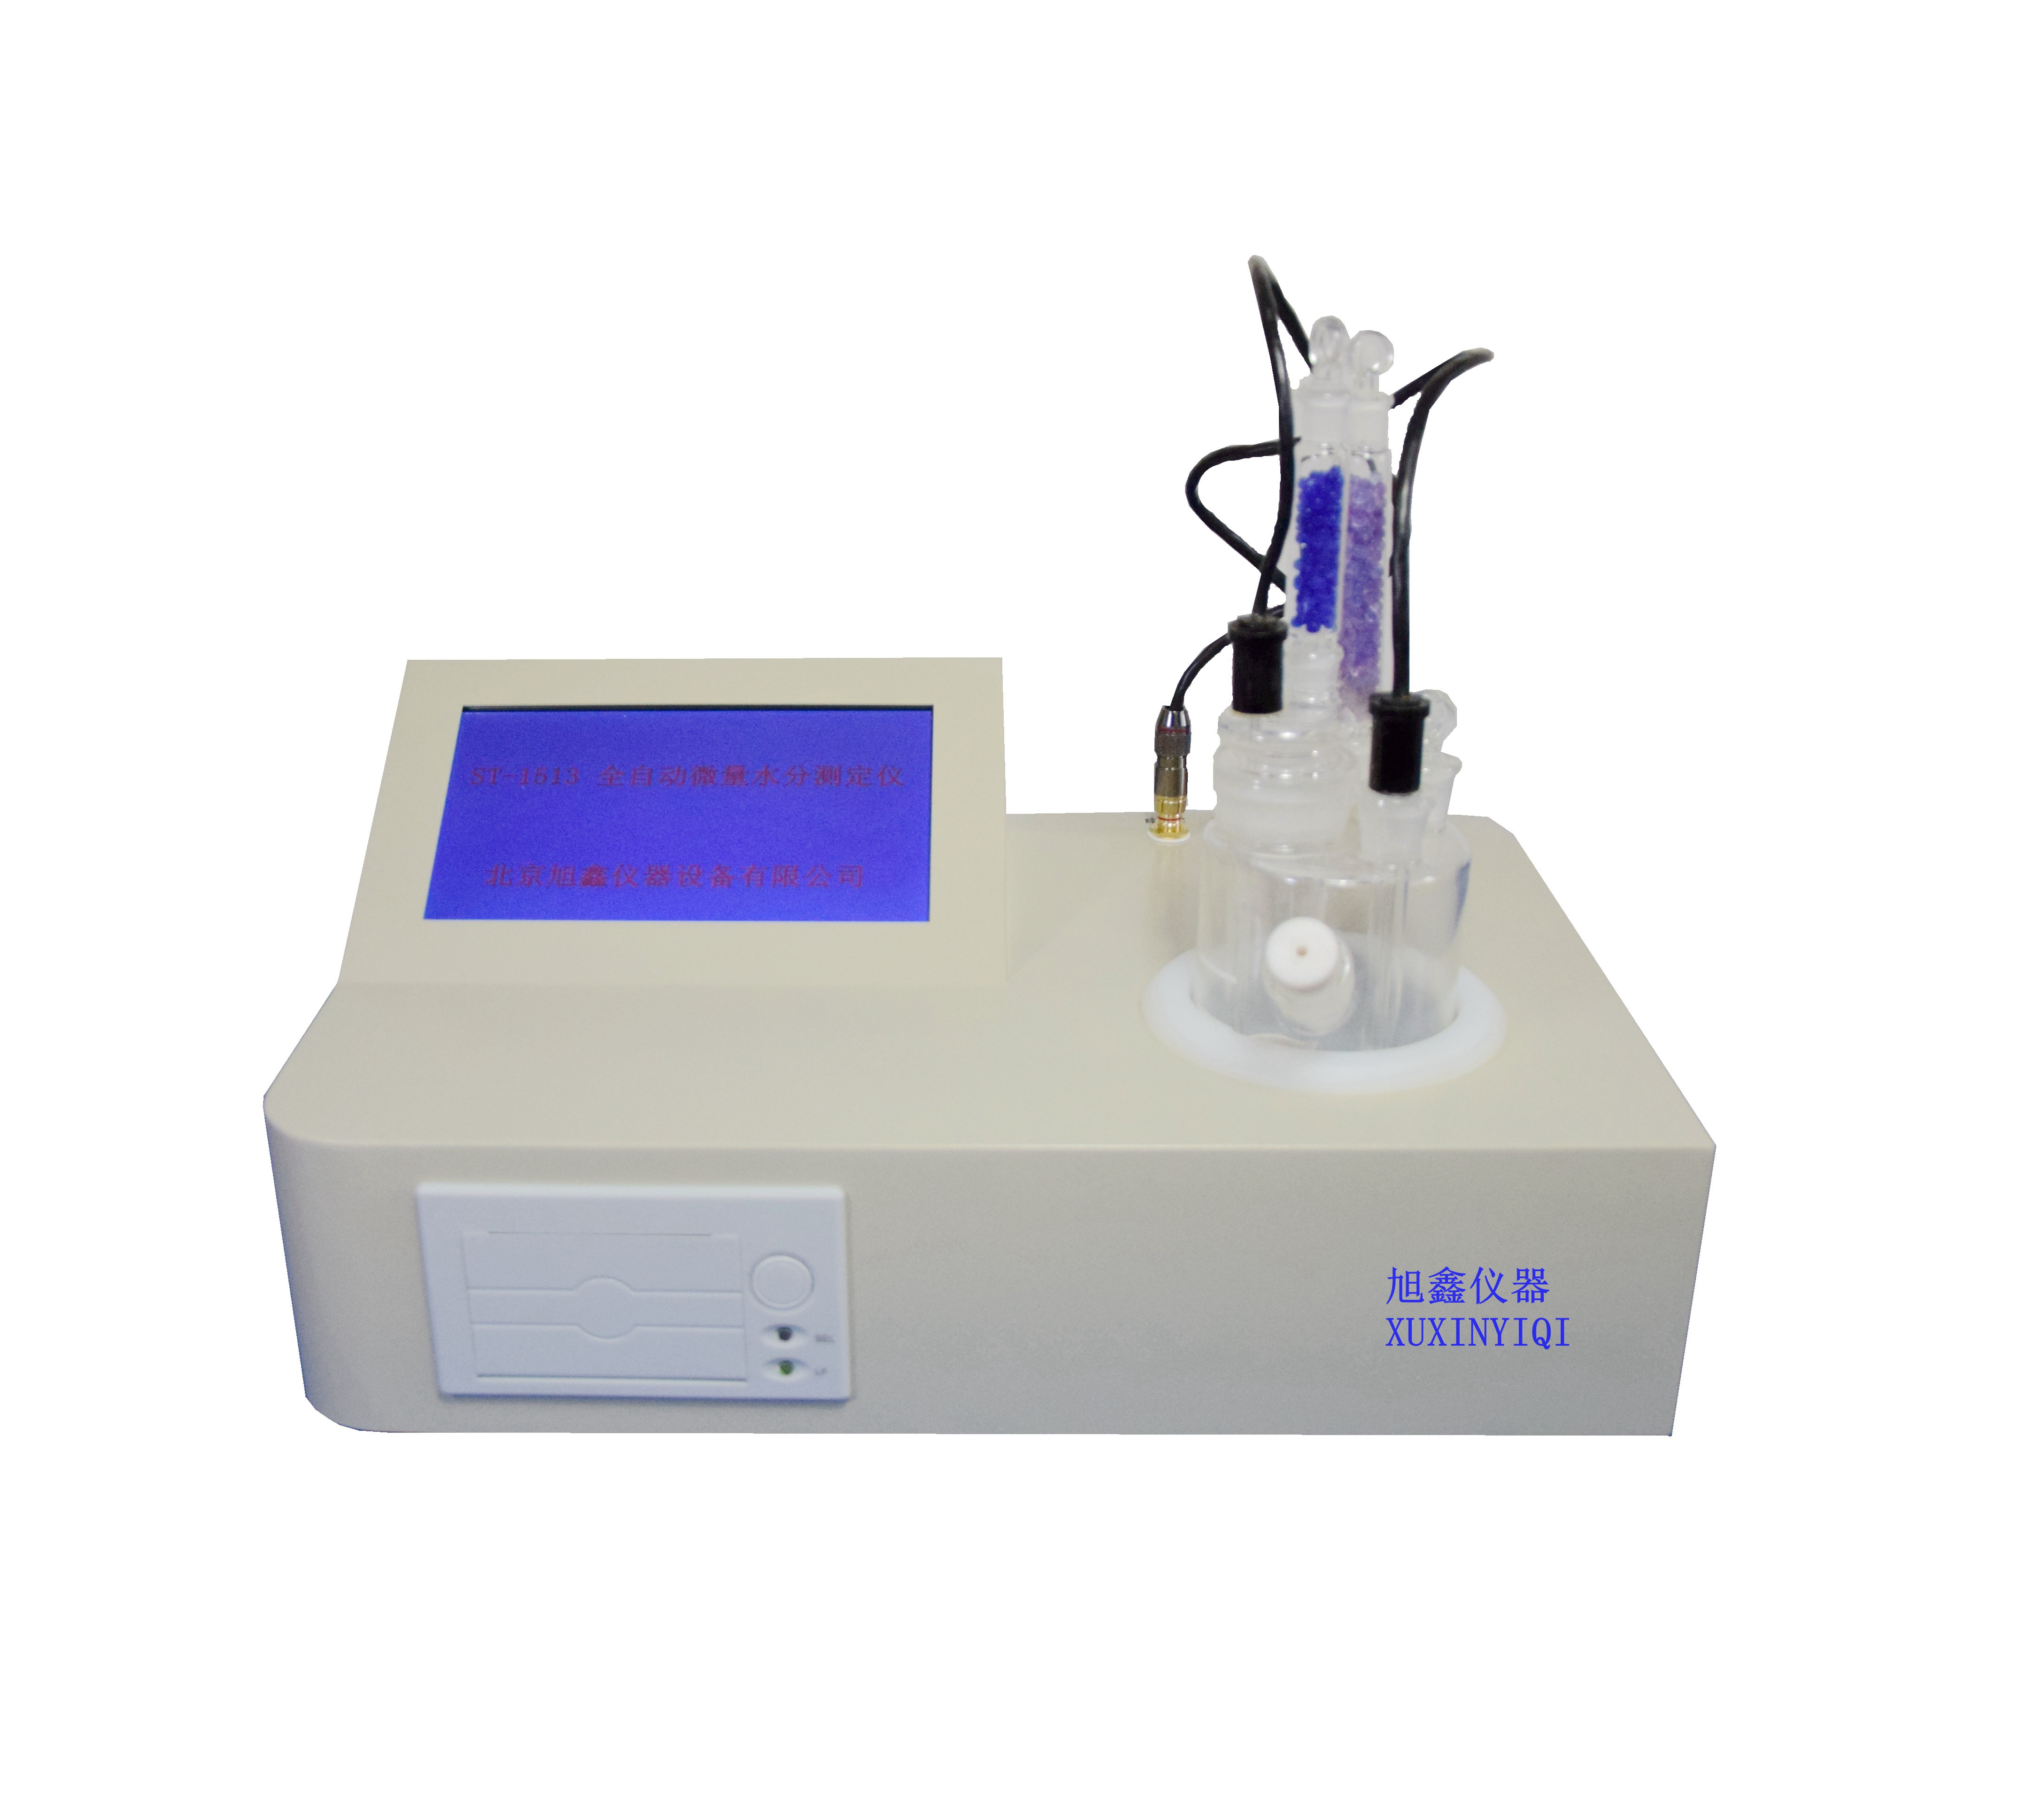 水分分析仪 全自动微量水分检测仪 微量水分检测仪